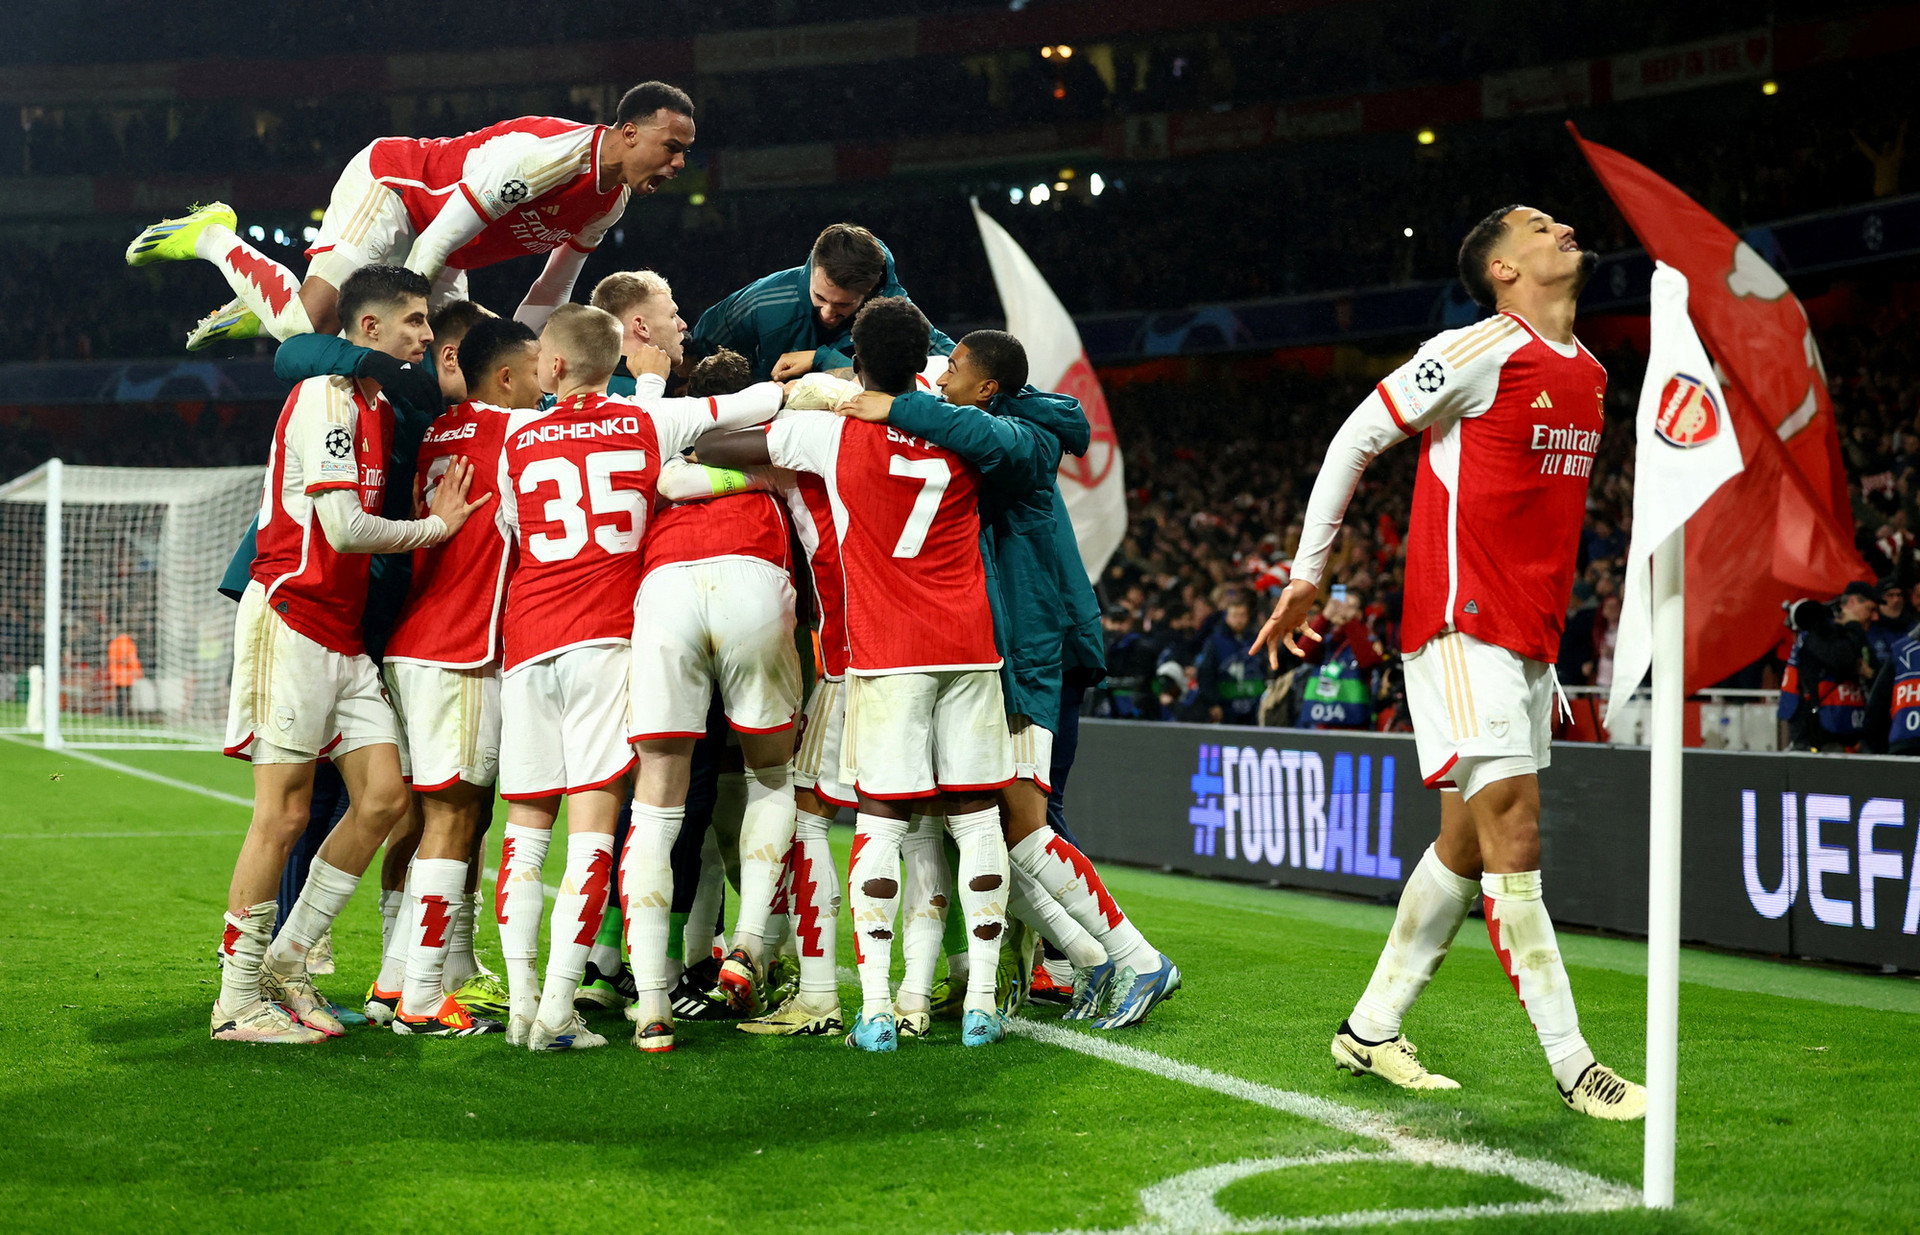 Niềm vui của các cầu thủ Arsenal trong trận đấu với Porto ở lượt về vòng 16 đội Champions League - Ảnh: REUTERS